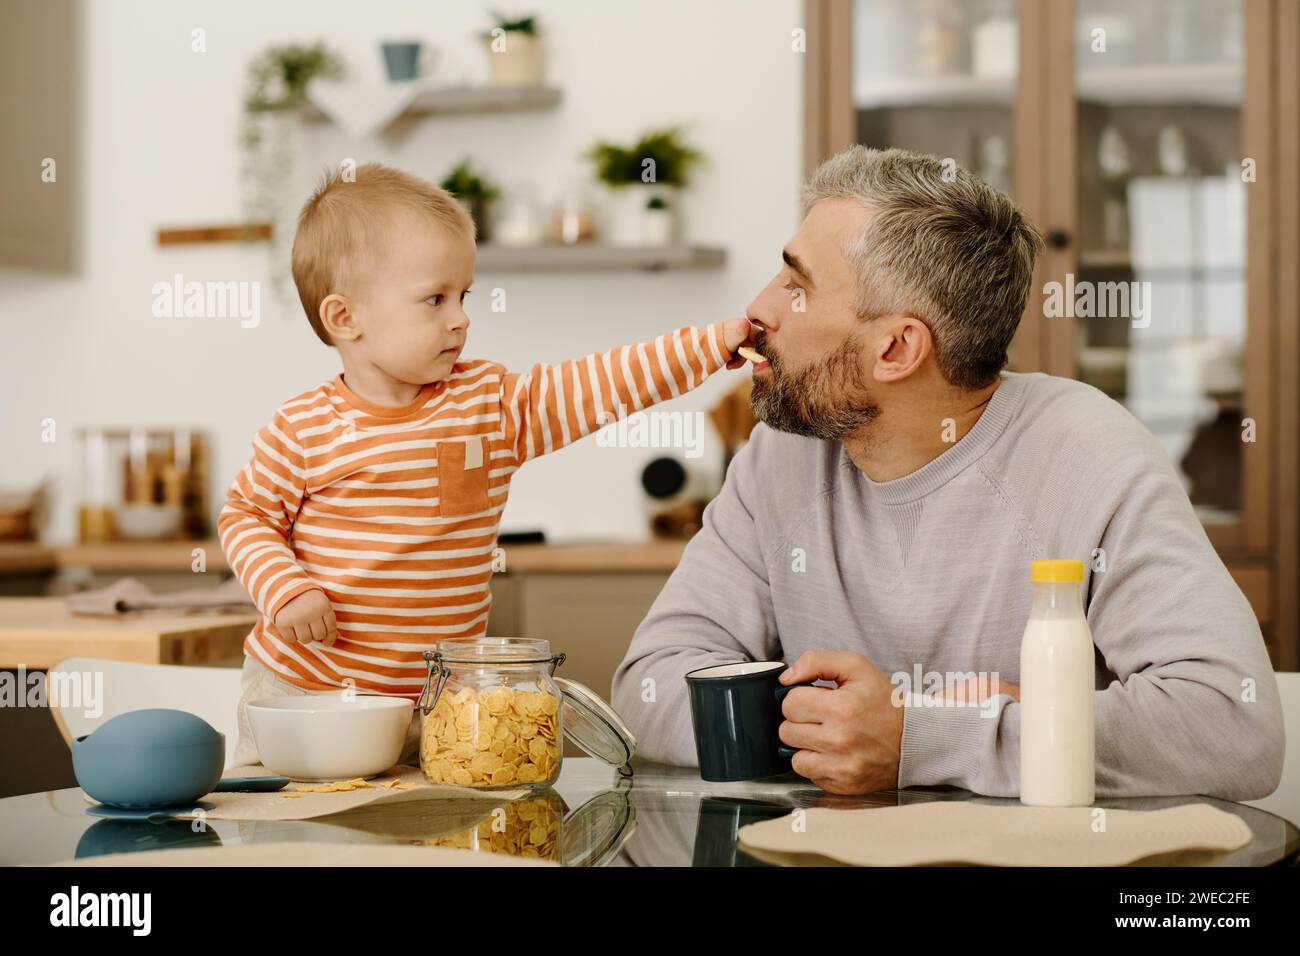 Entzückender Junge, der seinem Vater Kekse oder Cornflakes mit einer Tasse Tee oder Kaffee in den Mund steckt und mit seinem Sohn frühstückt Stockfoto